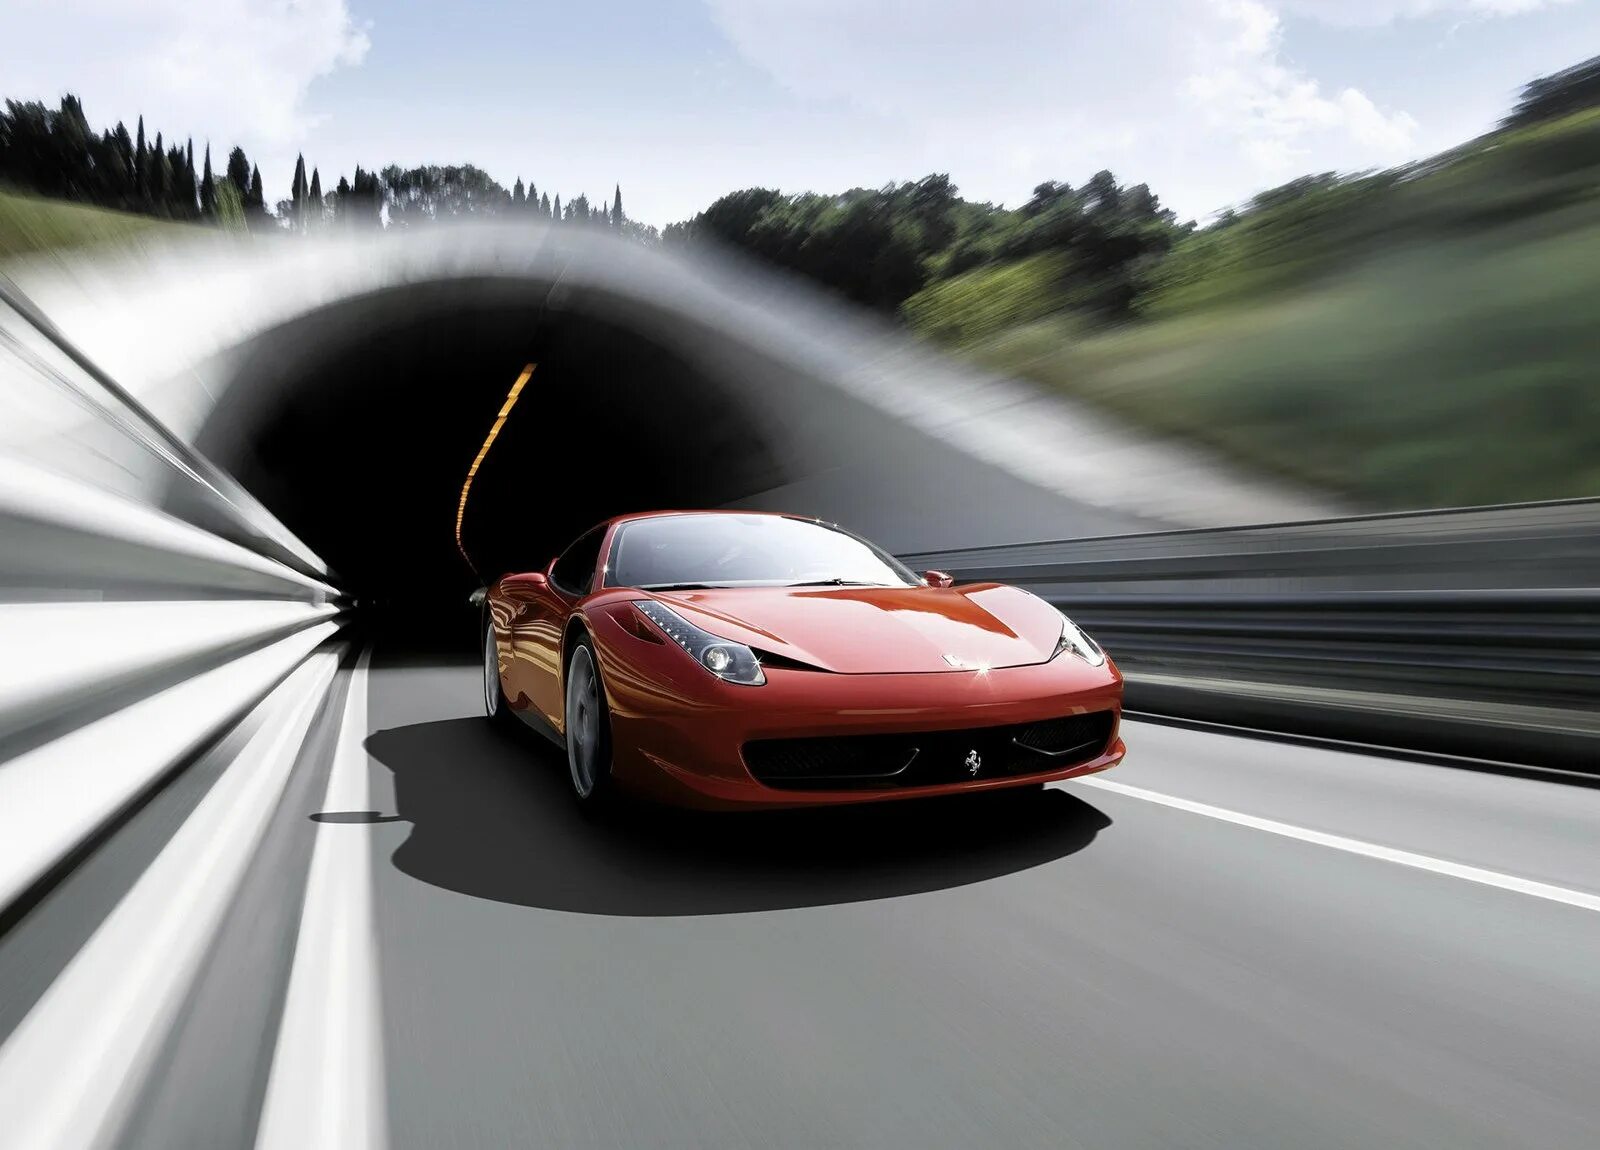 Едет красная машинка. Ferrari 458 аэродинамика. Машина в движении. Красивая машина на дороге. Авто скорость.